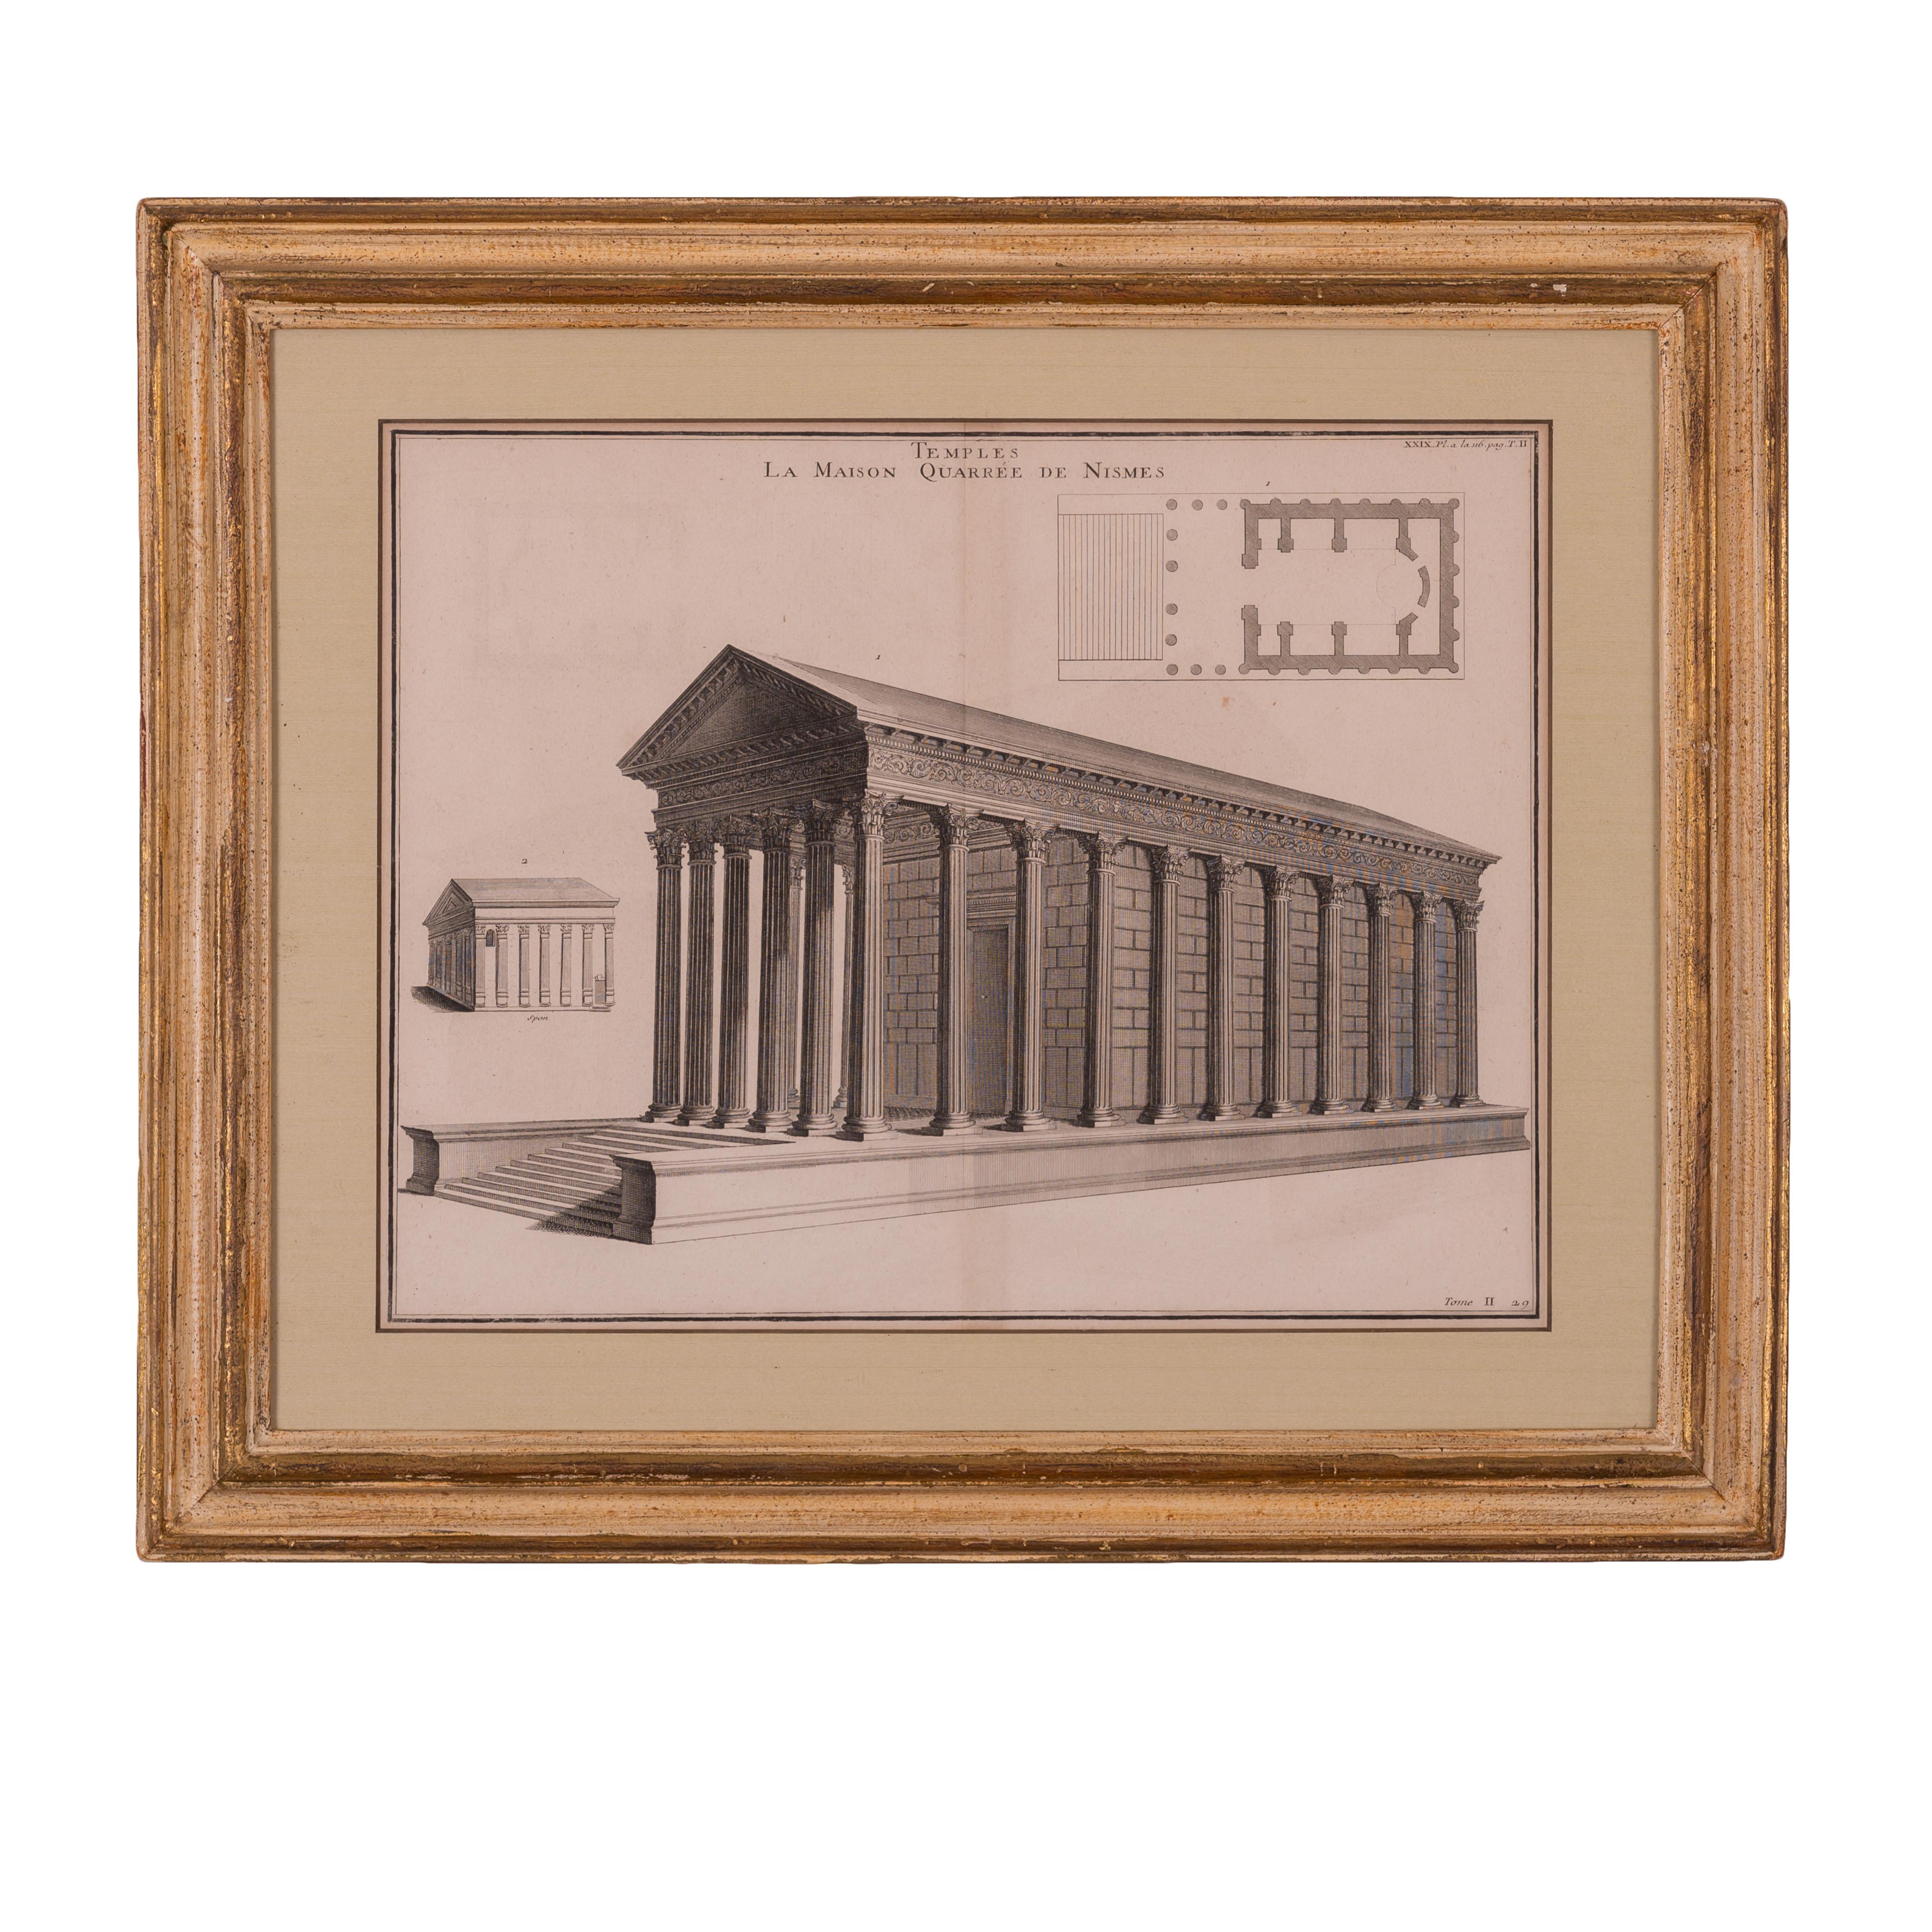 Bernard de Montfaucon 
(Français, 1655-1741)

Cette paire de gravures sur cuivre, représentant des temples romains (dont le temple de Nîmes, en France, ou la Maison Maison), est tirée de L'antiquité expliquée et représentée en figures de Montfaucon,